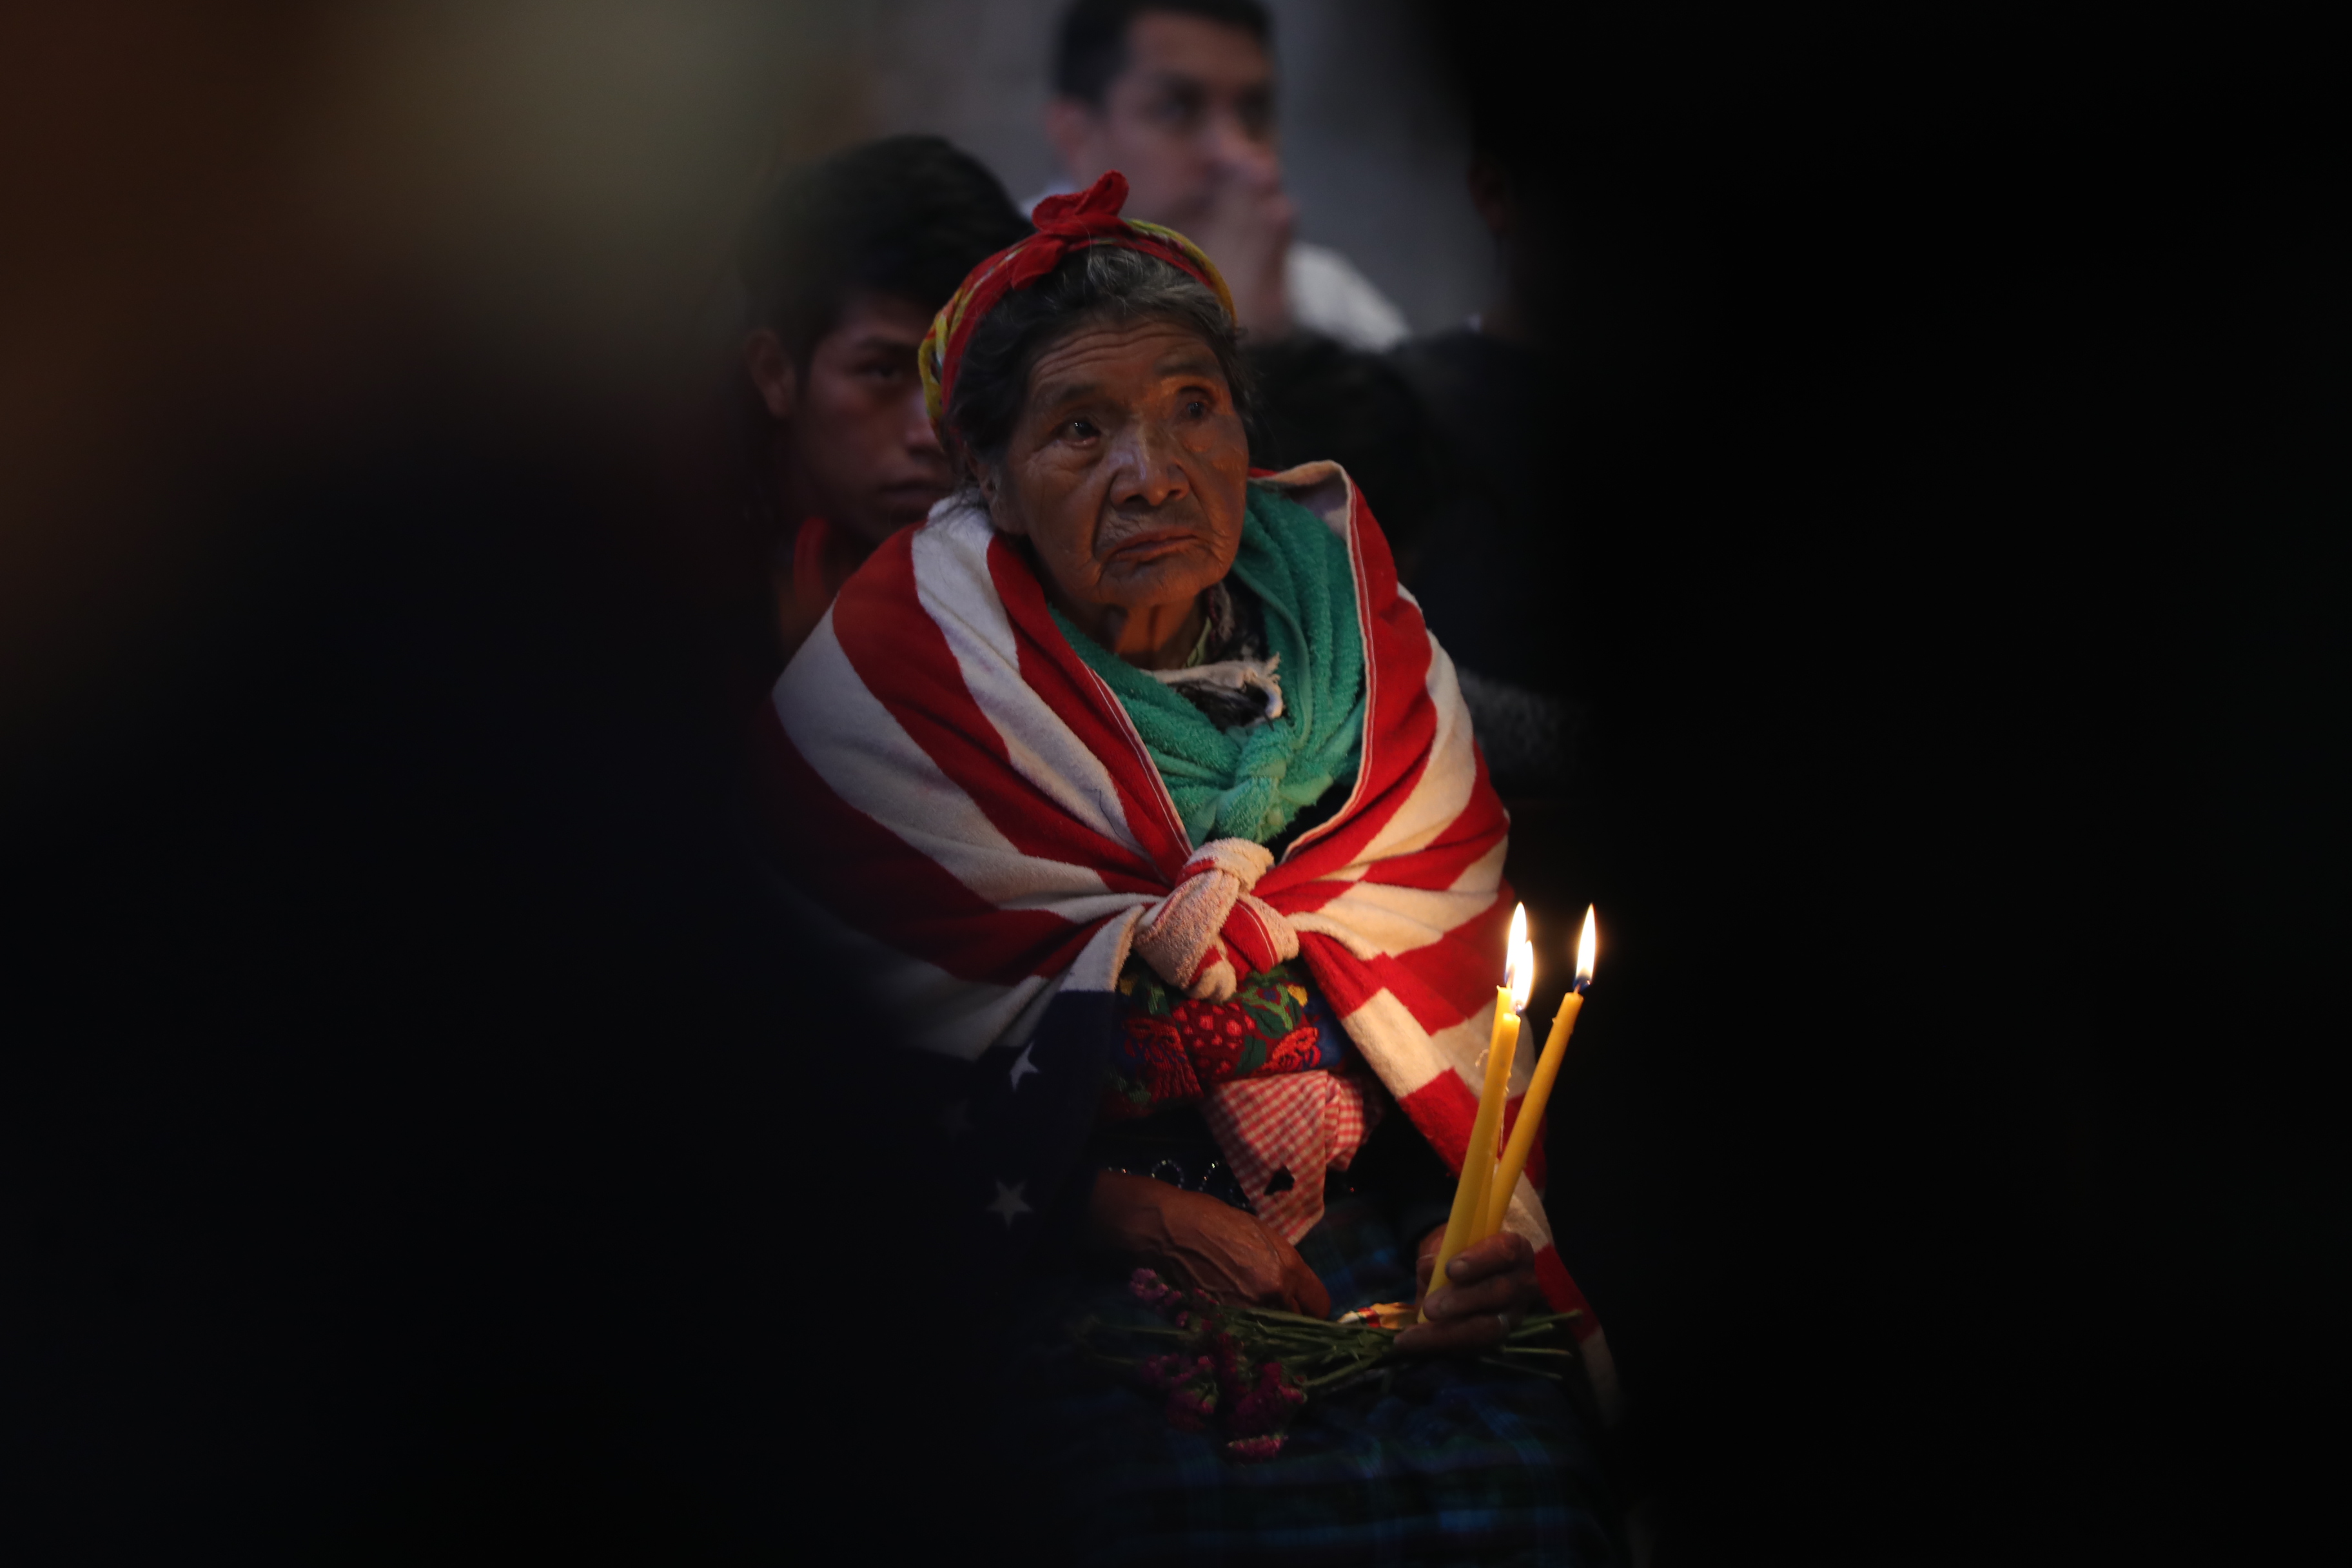 Miles de vecinos en San Juan Ostuncalco son devotos de la Virgen de Candelaria. (Foto Prensa Libre: Mynor Toc)